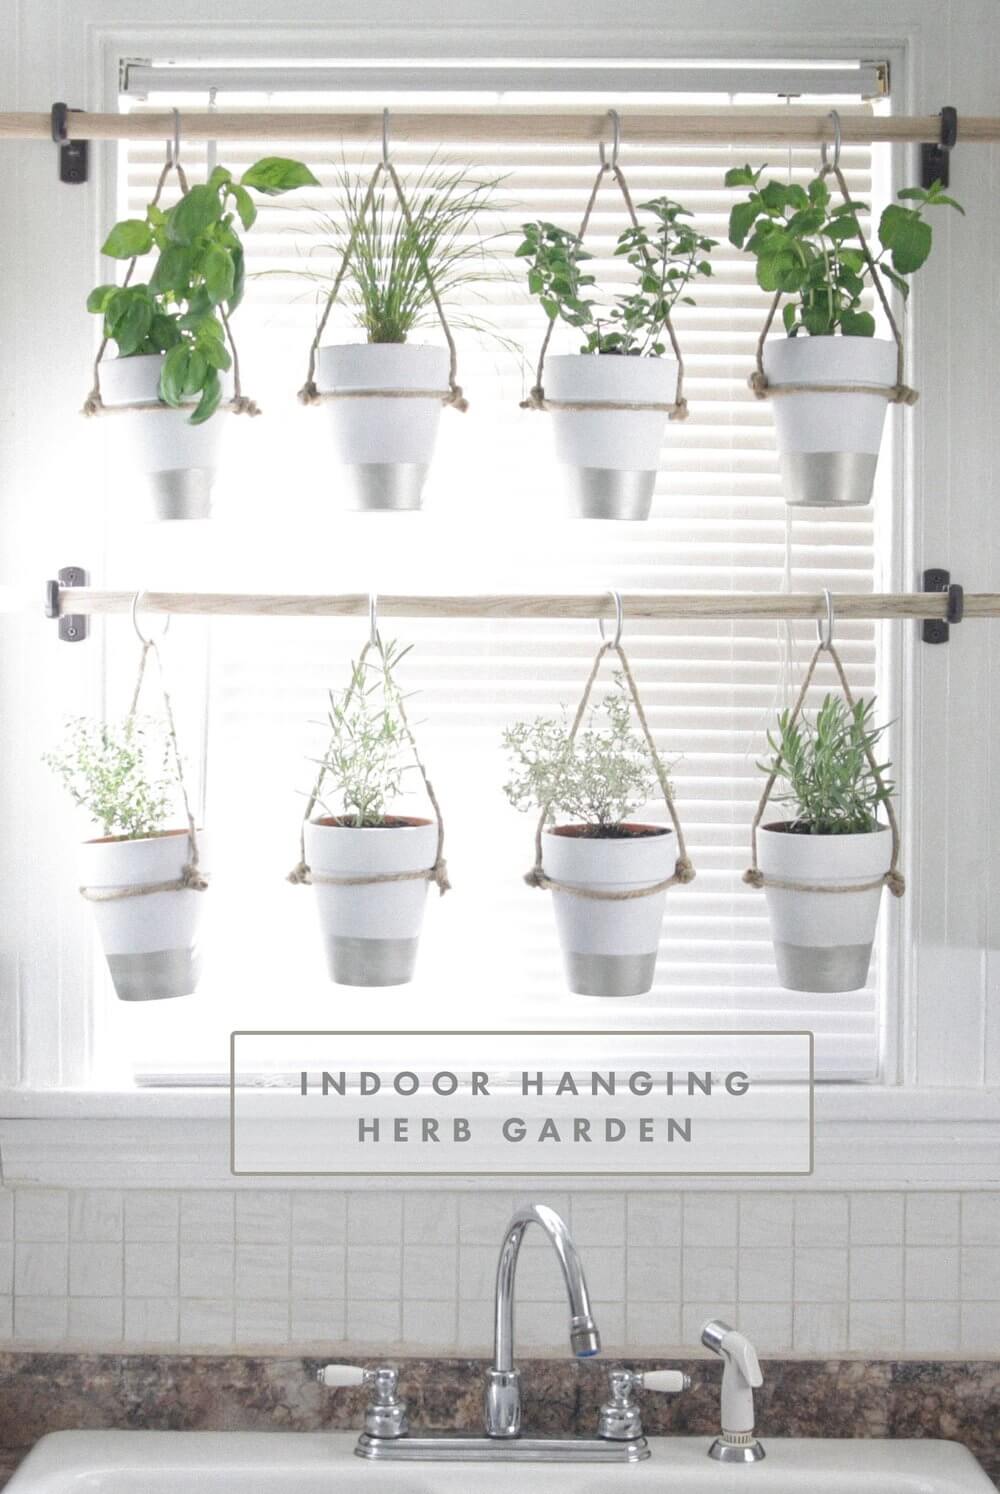 Hanging indoor herb garden over kitchen window sink